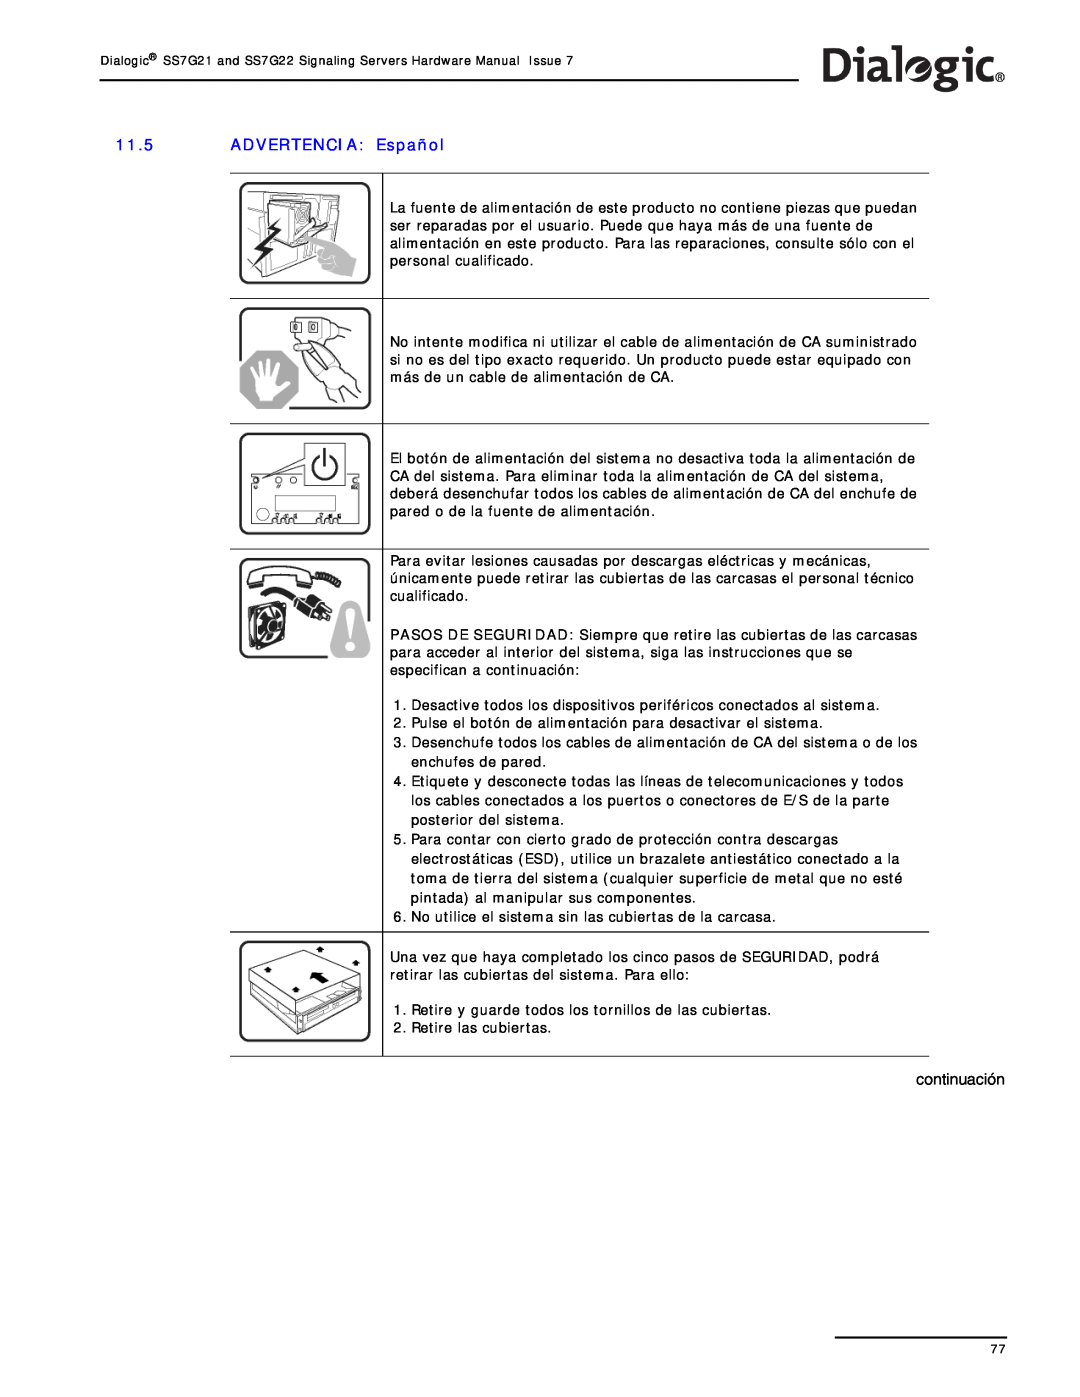 Dialogic SS7G22, SS7G21 manual ADVERTENCIA Español, continuación 